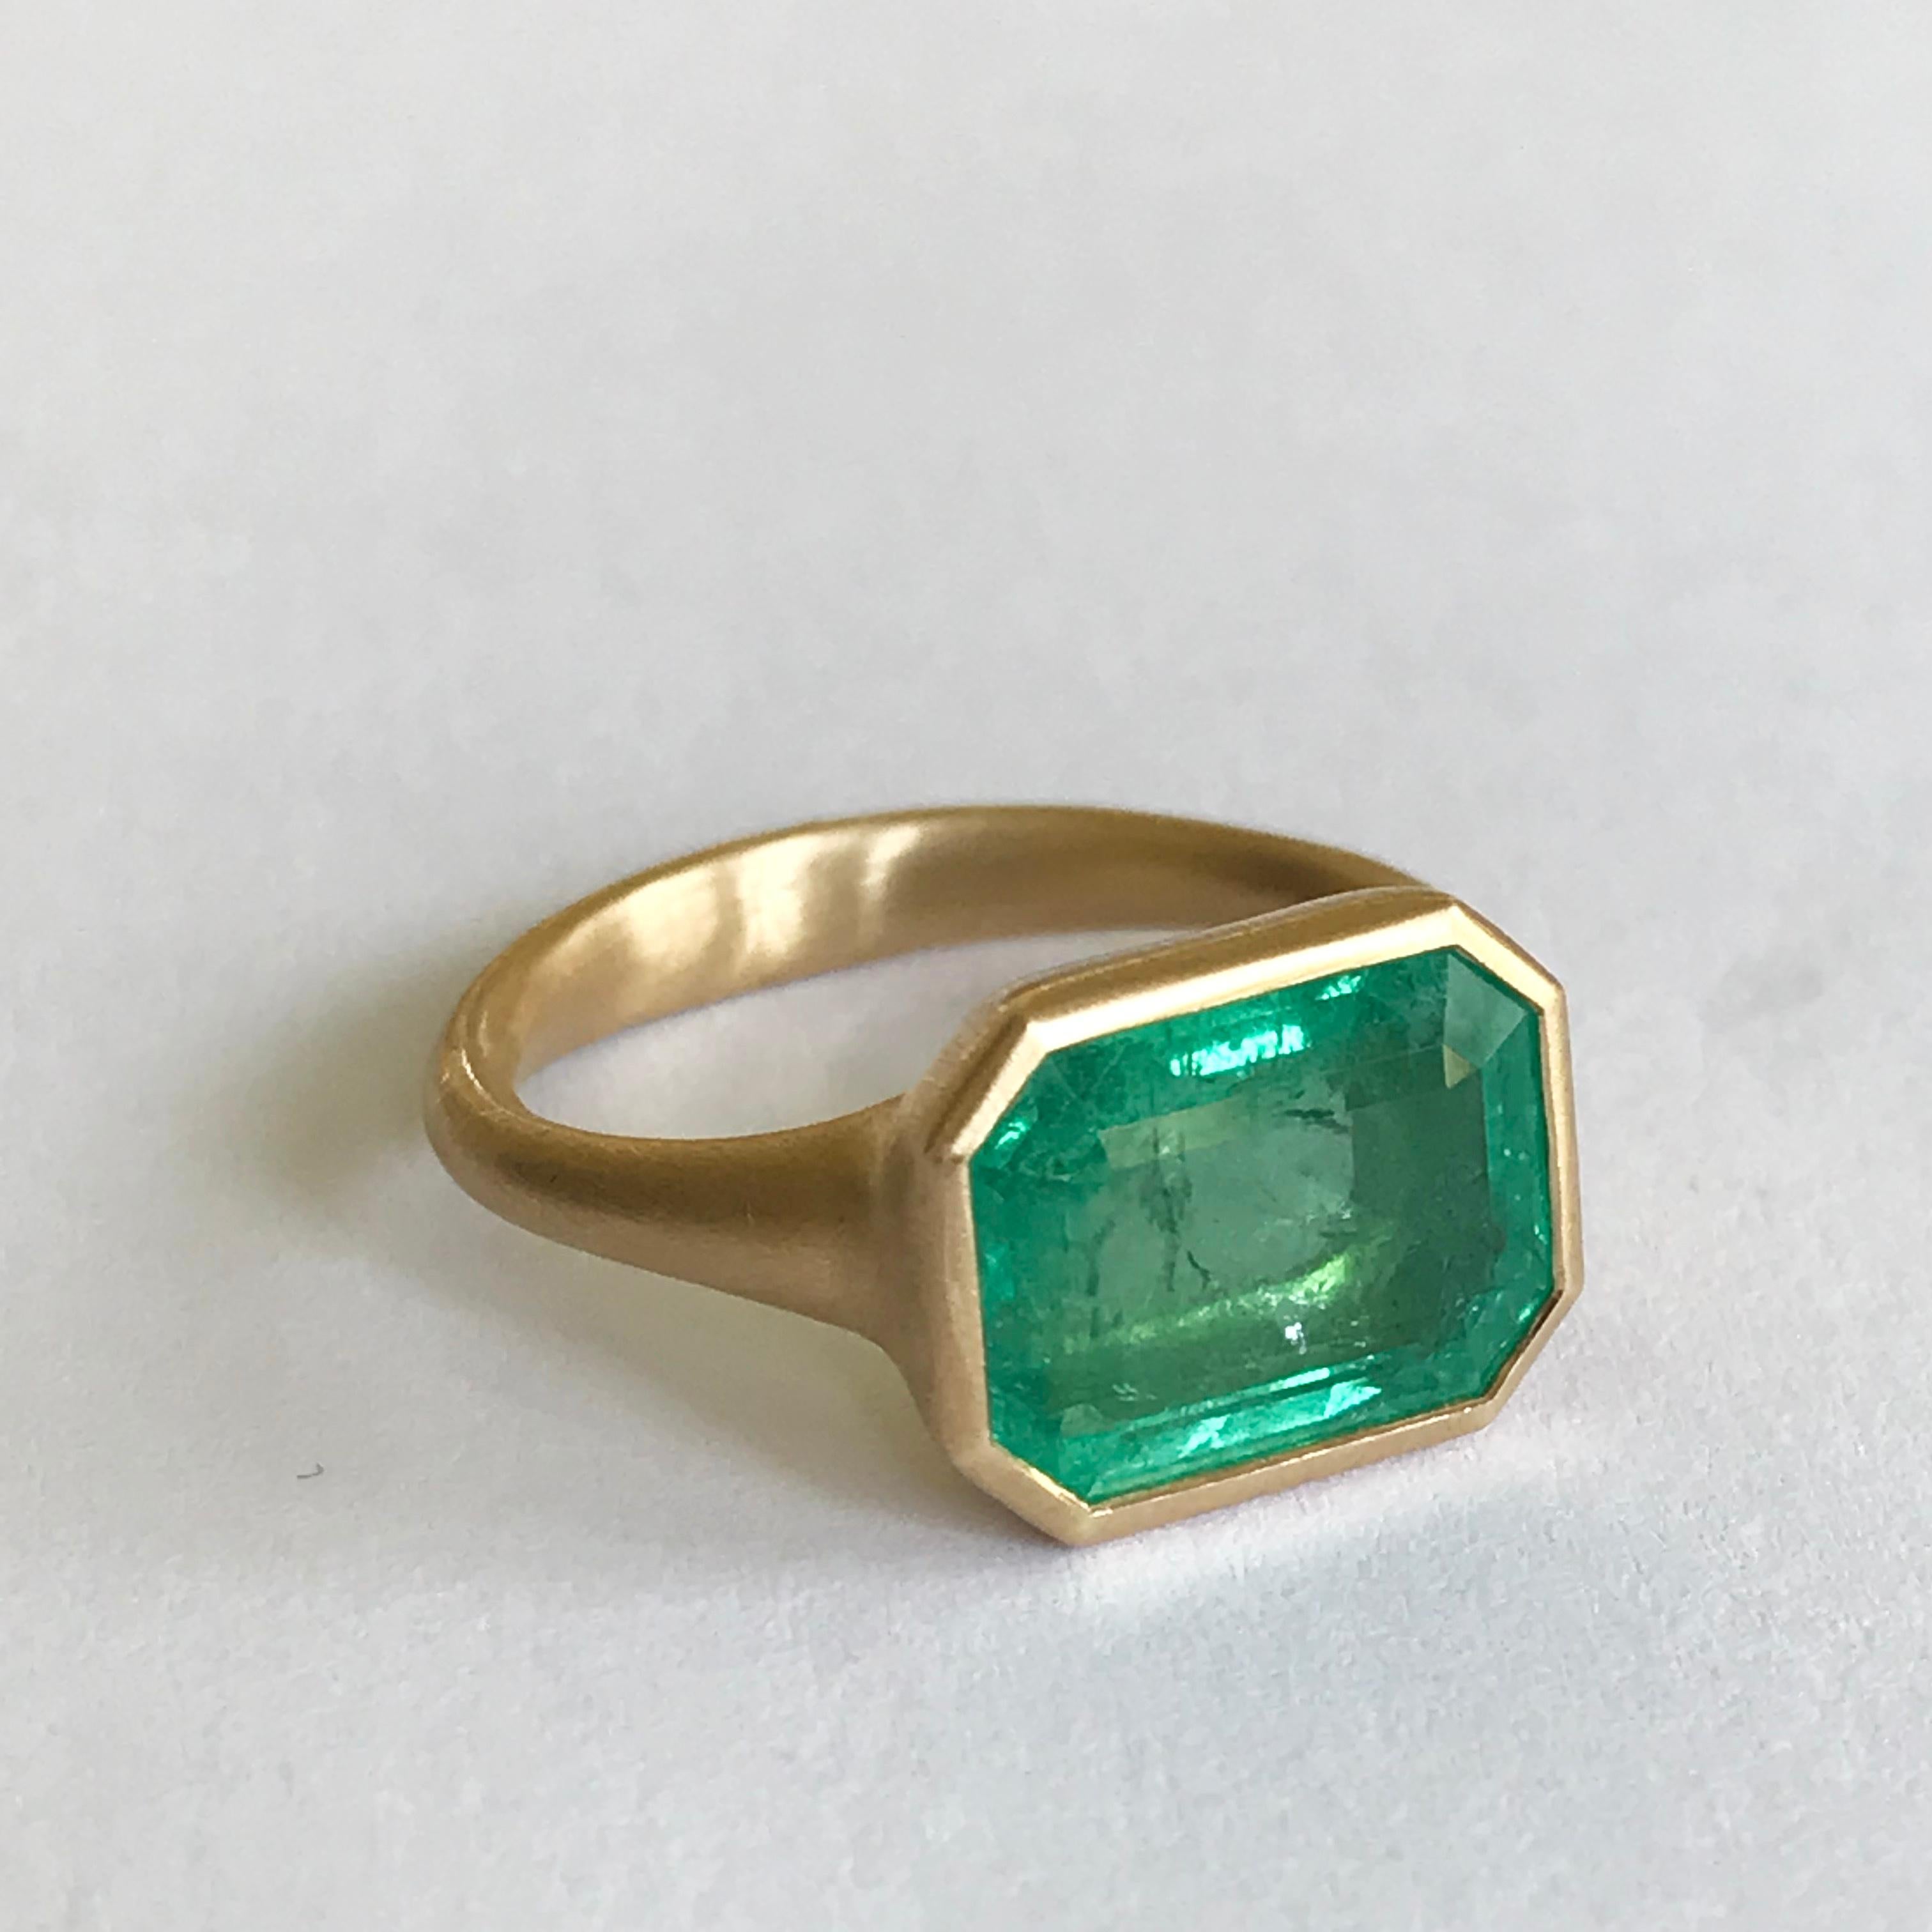 Dalben 4, 3 Carat Emerald Yellow Gold Ring 9